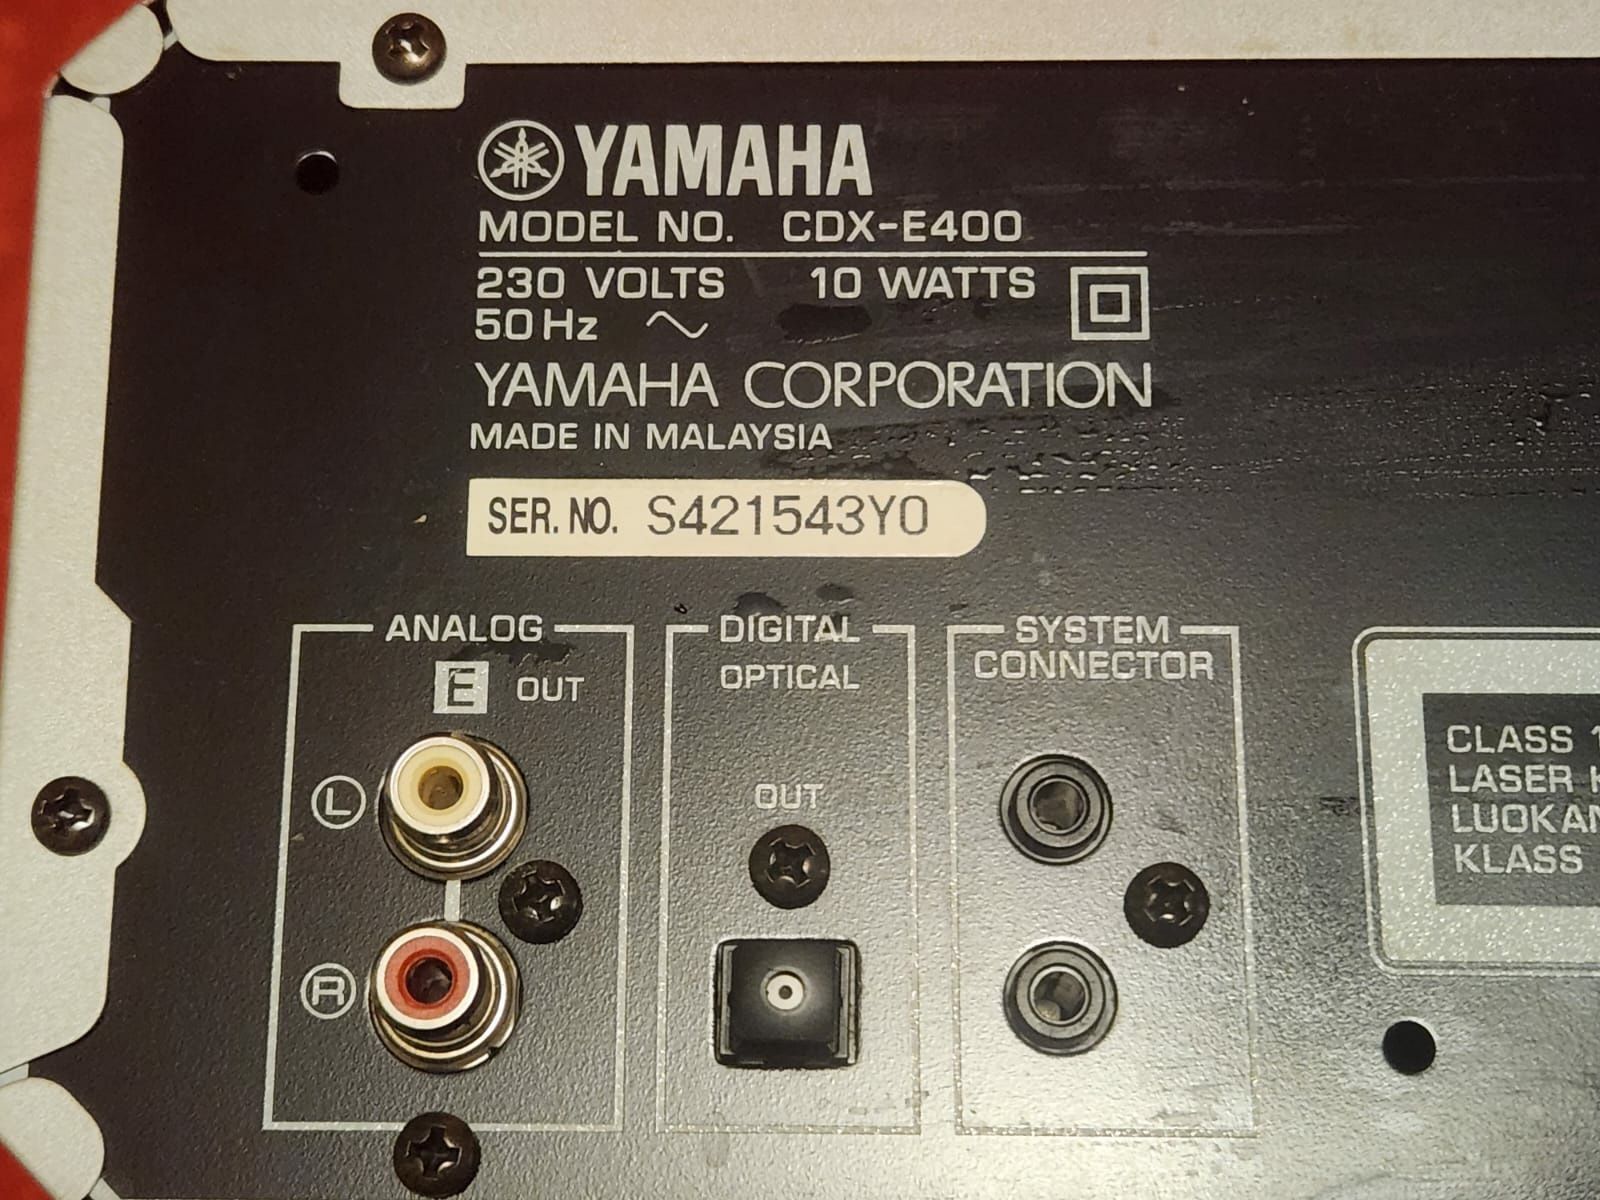 Yamaha cd cdx-e400